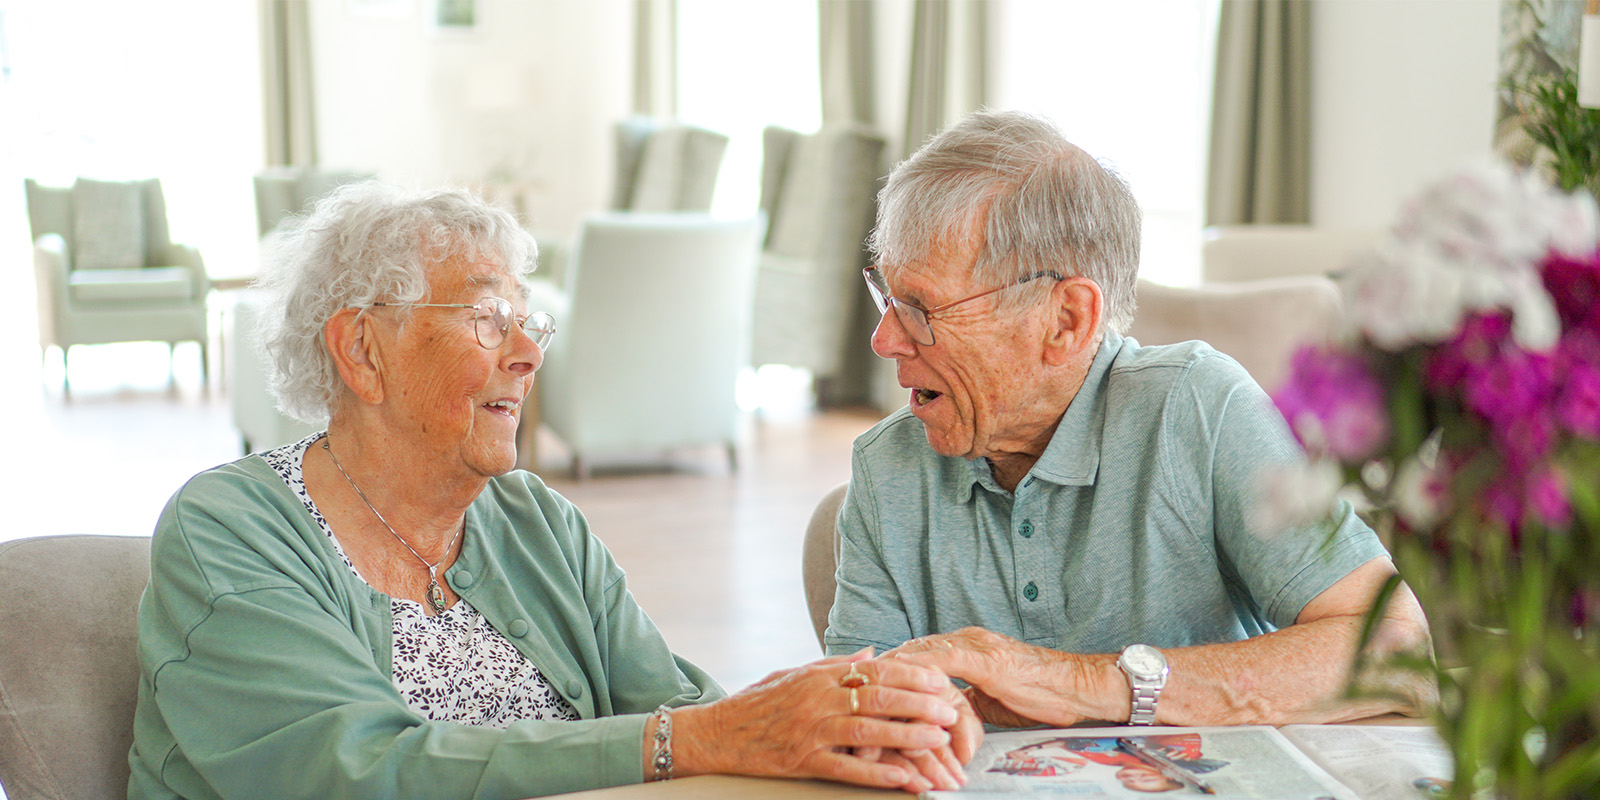 Herman en Joke wonen als echtpaar samen in Het Snijdelhuis in Boskoop, woonzorglocatie voor mensen met dementie. Op de foto zitten ze aan tafel in de huiskamer en lachen ze naar elkaar.